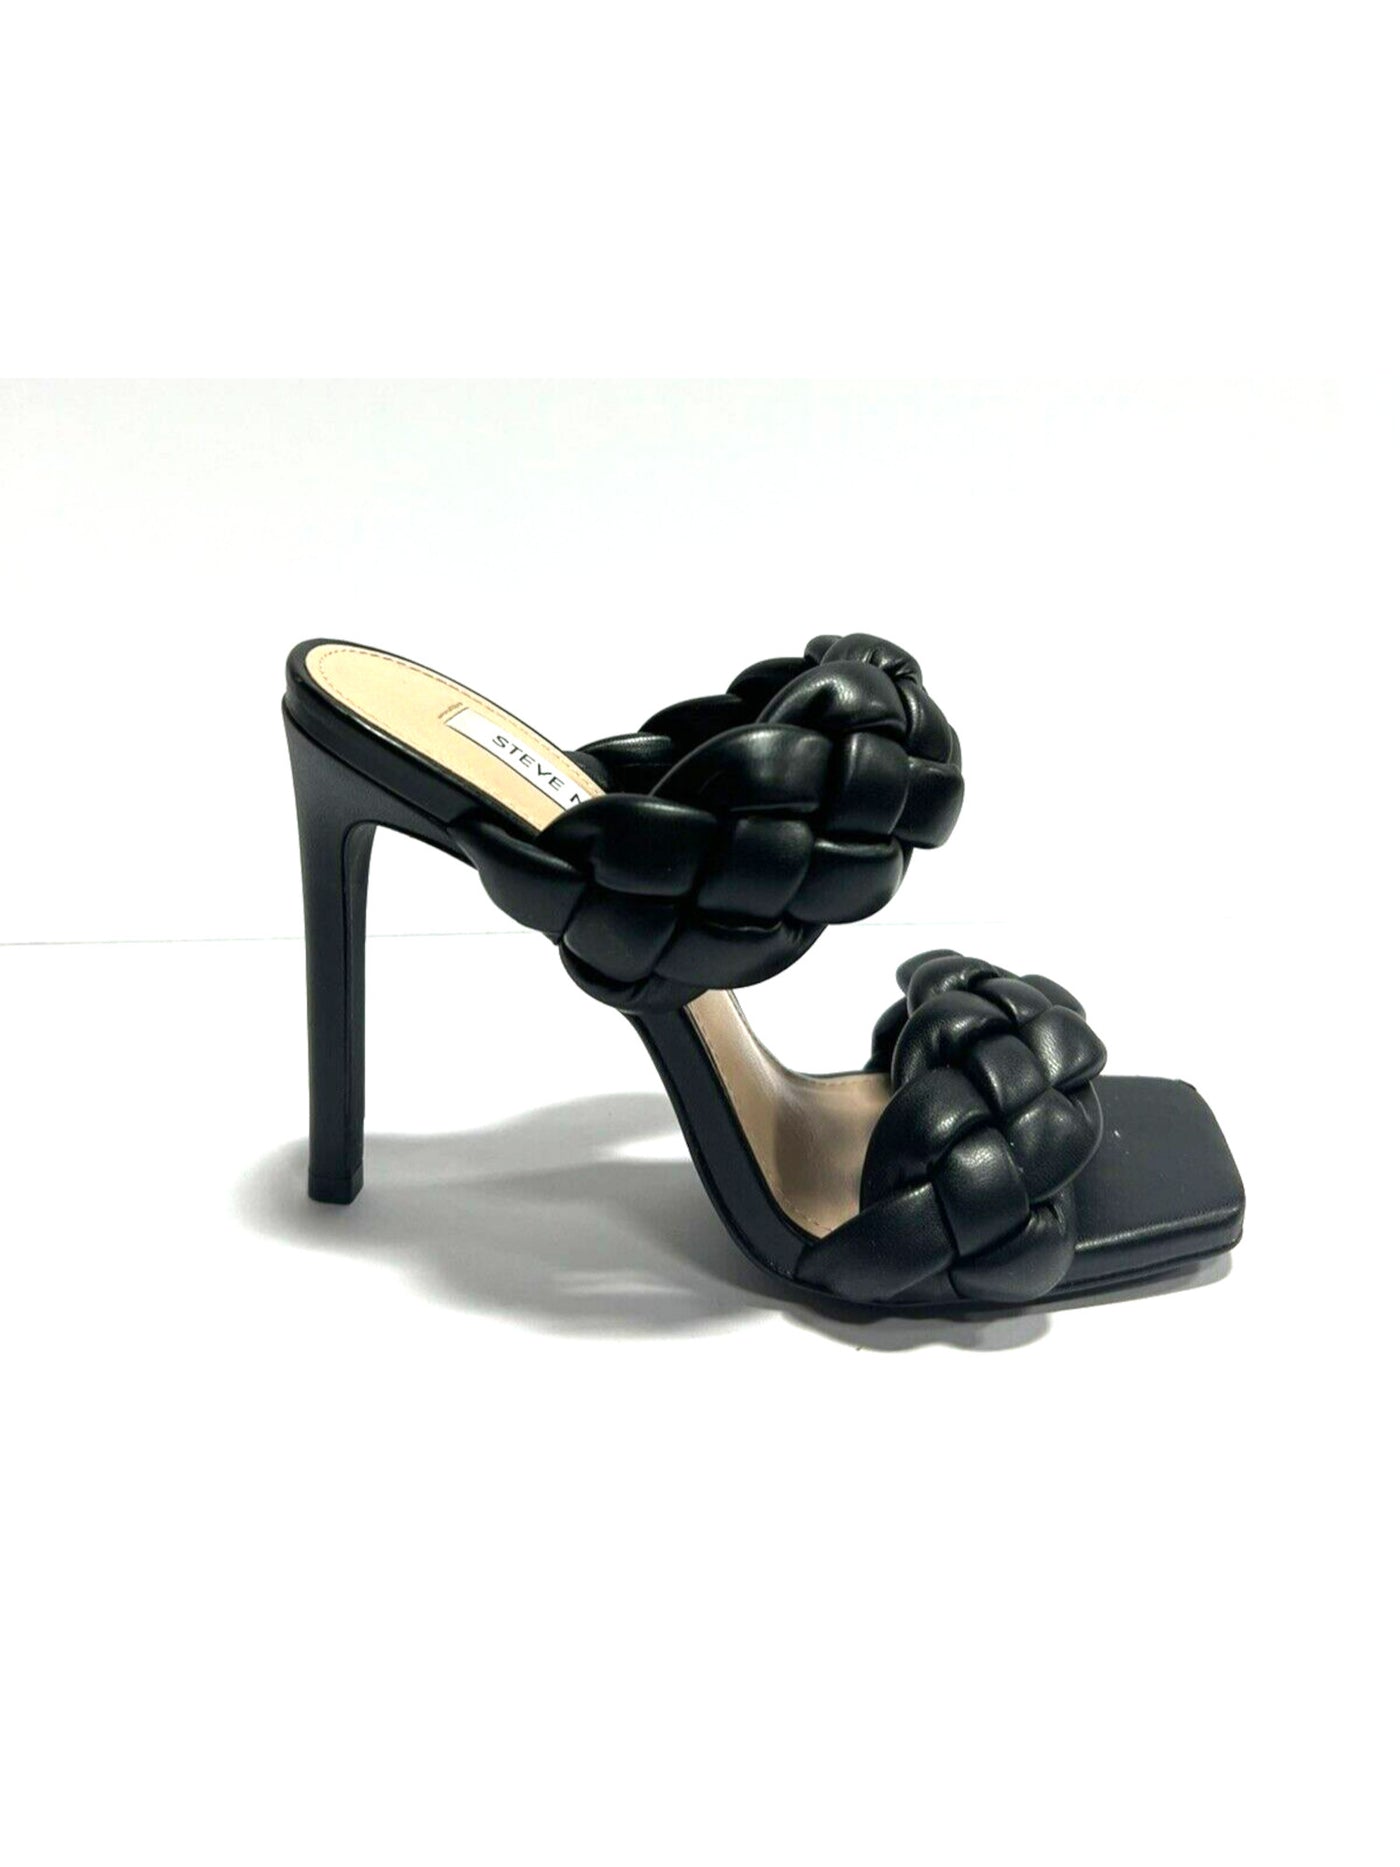 STEVE MADDEN Womens Black Braided Padded Kenley Square Toe Stiletto Slip On Dress Sandals Shoes 6 M